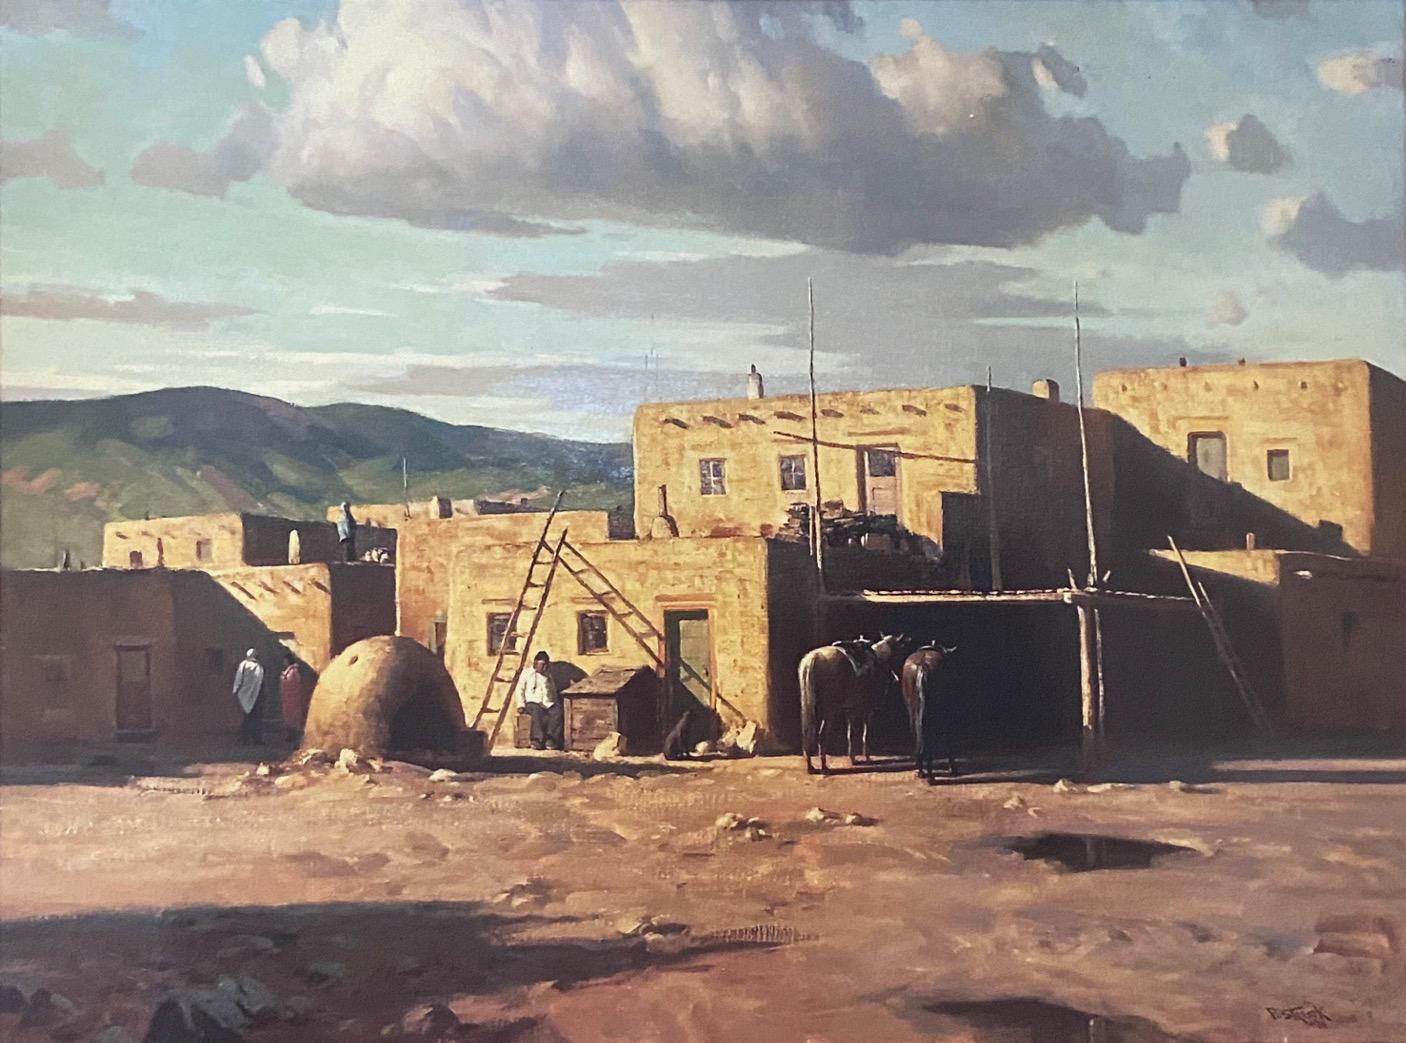 Paul Strisik Landscape Painting - "Taos Pueblo" New Mexico Scene